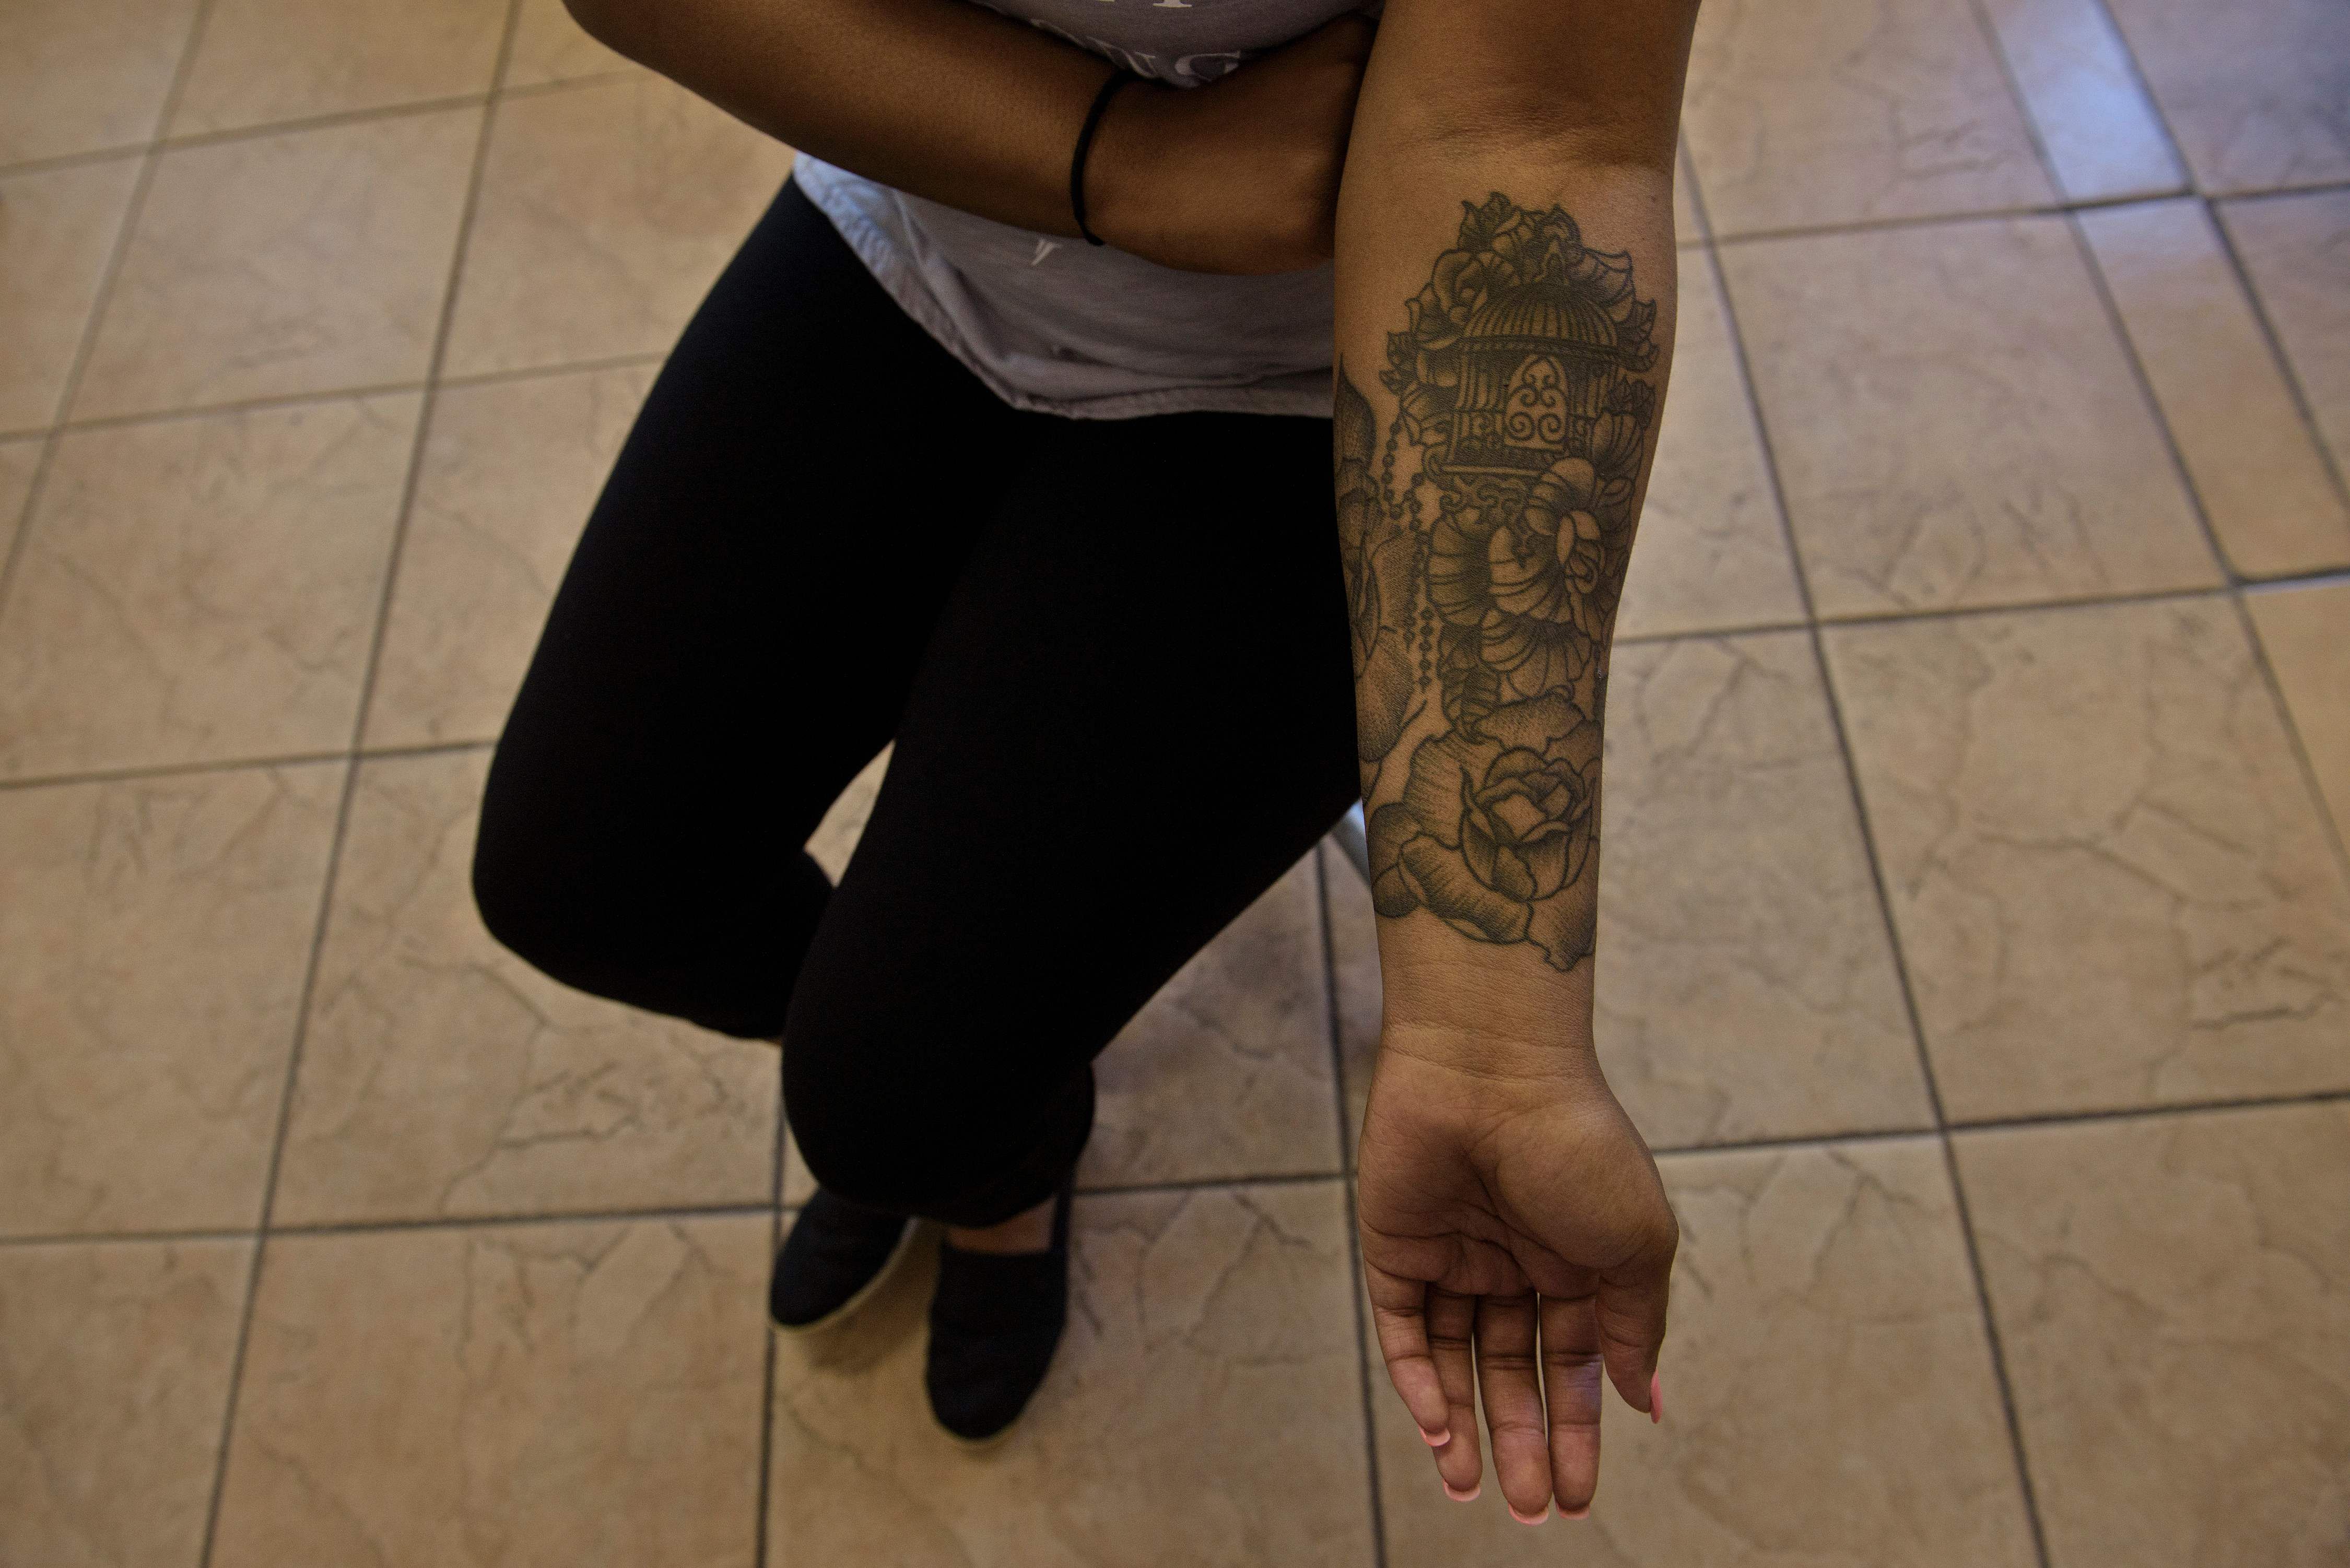 Veteran Ink - ** Like & Share ** This Veteran's Tattoo  http://www.veteranink.com/2017/04/17/us-navy-corpsman-shoulder-tattoo/  #veteran #veterans #tattoos #tattoo #ink #veteranink #navy #usnavy |  Facebook